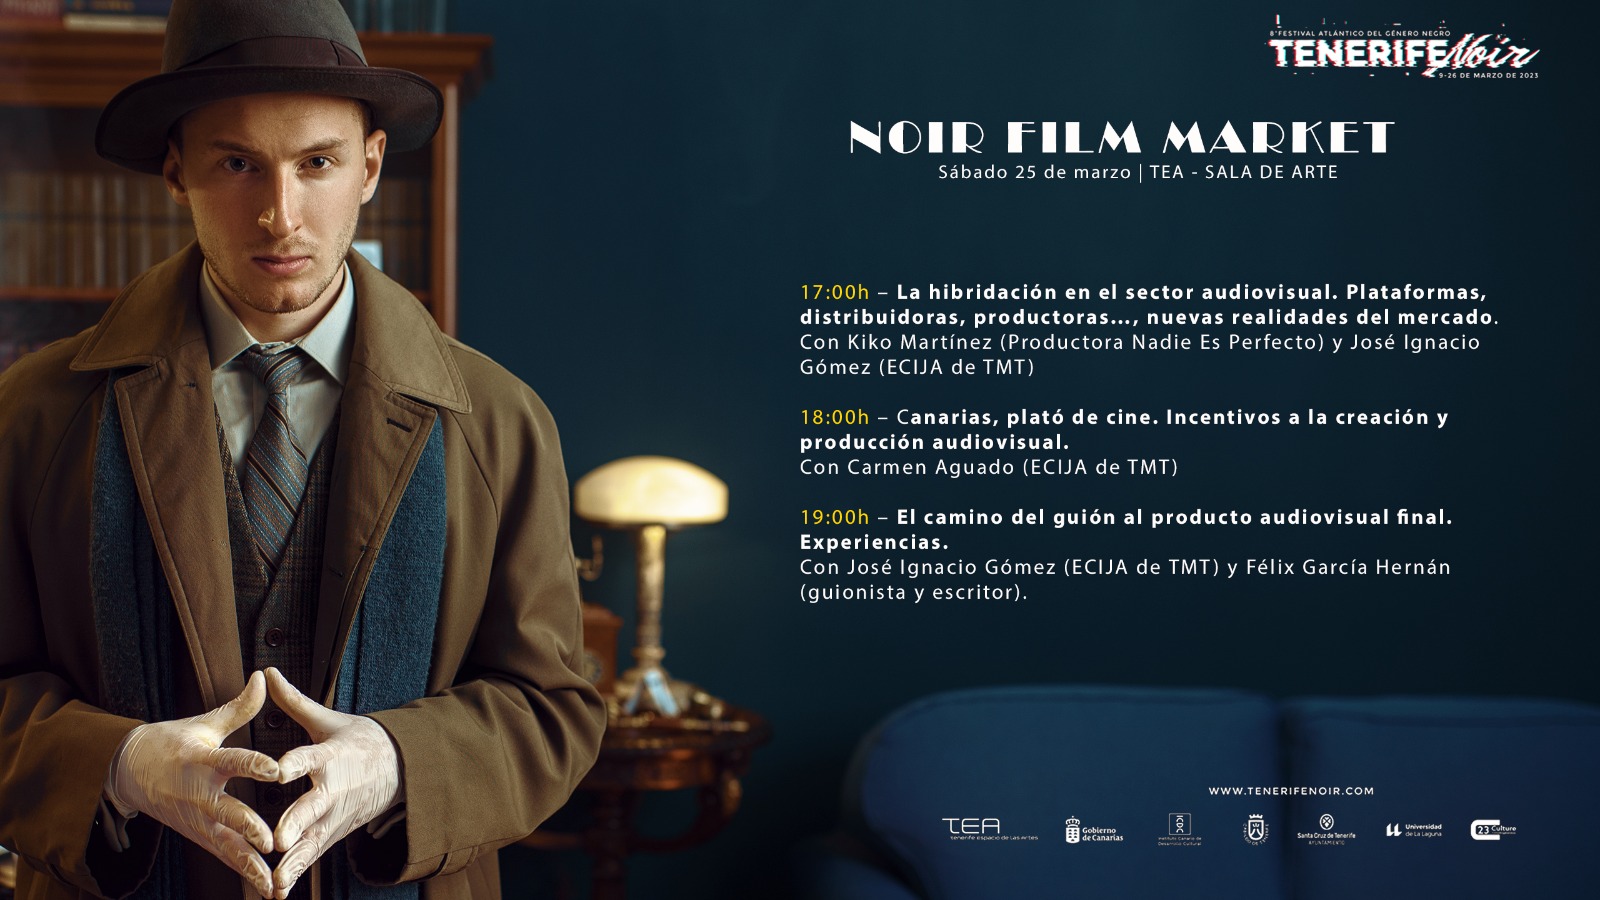 Tenerife Noir invita a escritores y profesionales a la primera edición del Noir Film Market